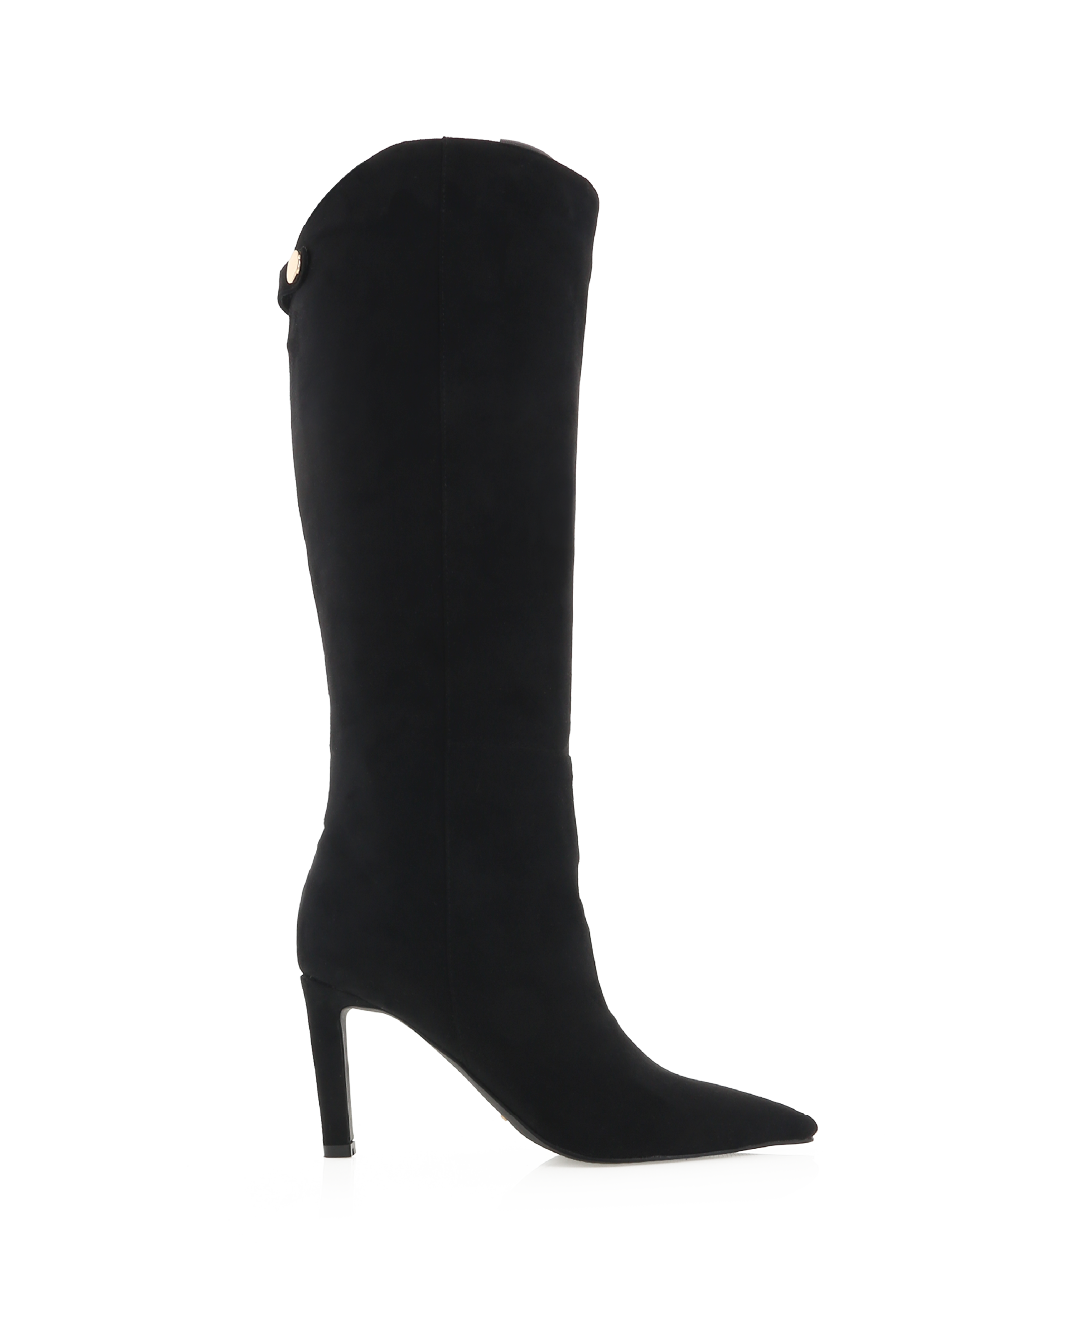 QUENNA - BLACK SUEDE-Boots-Billini-Billini